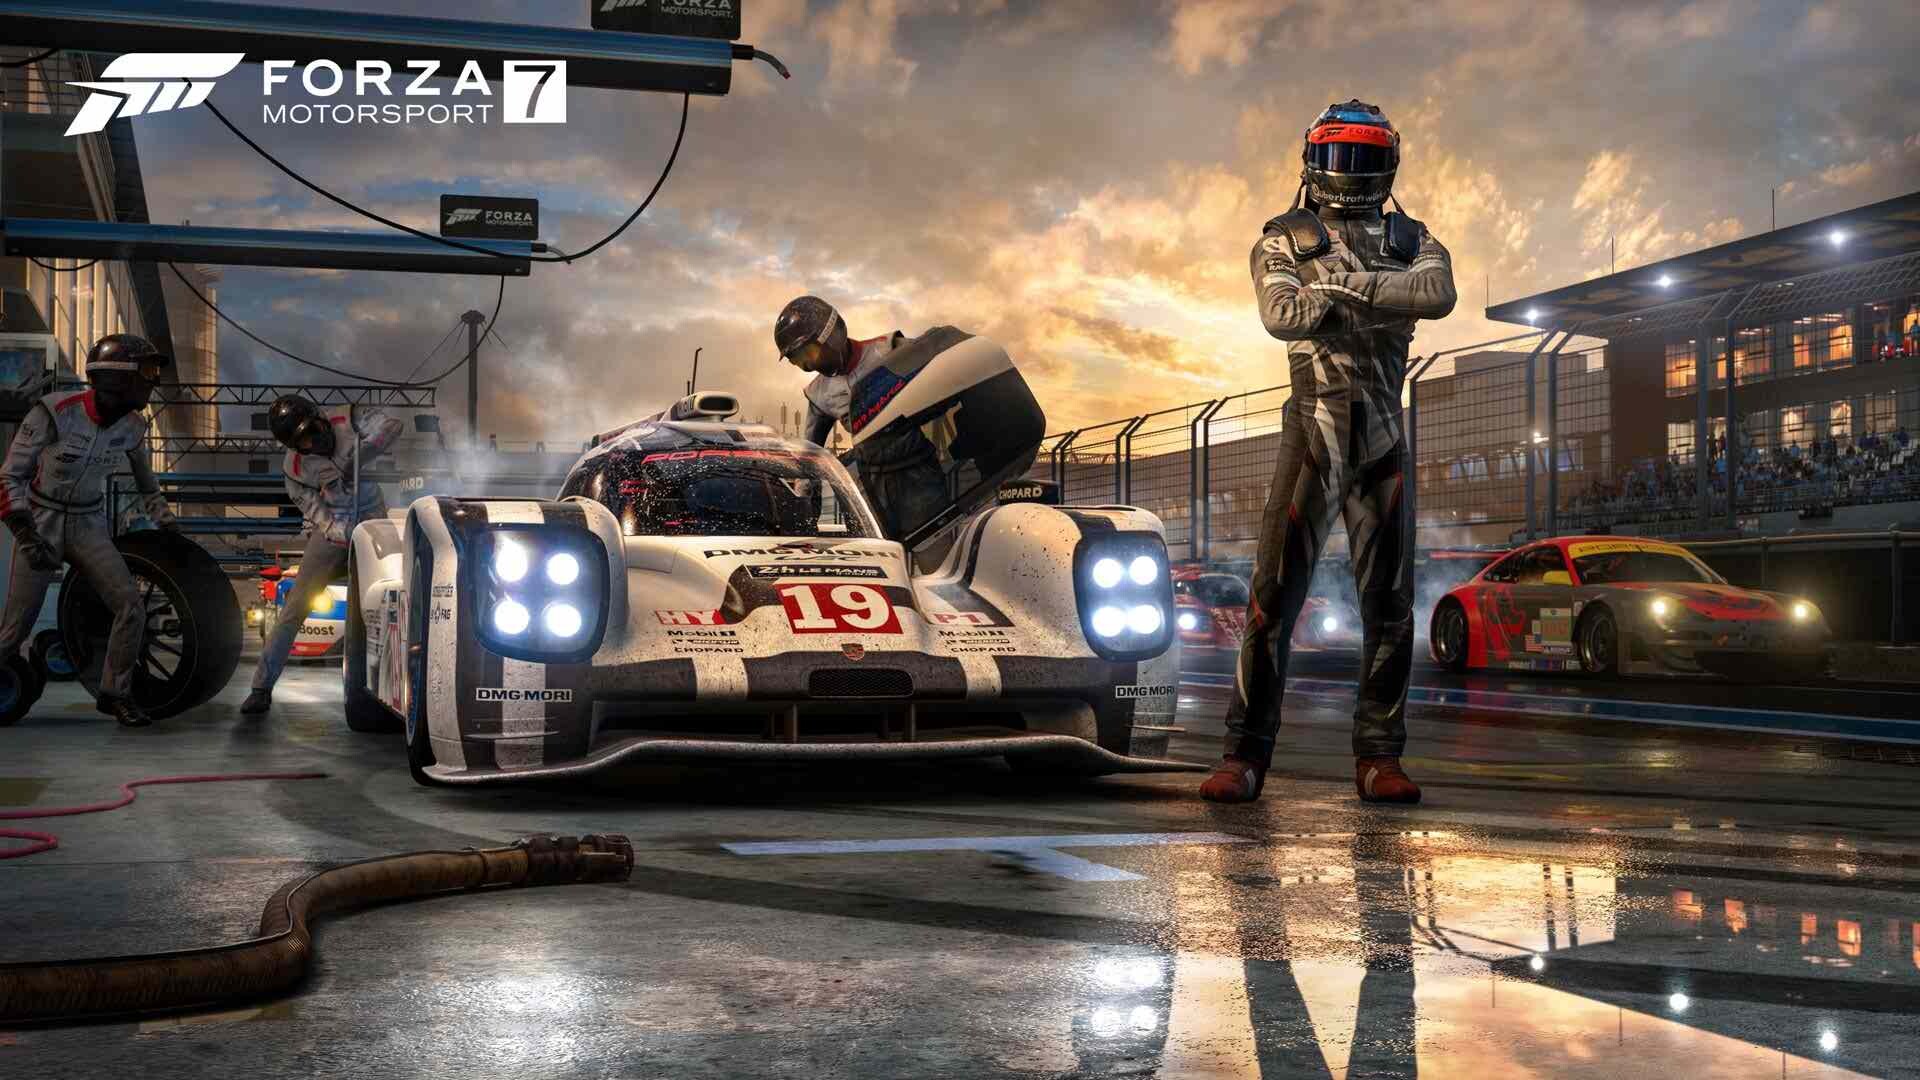 بازی Forza 7 مخصوص سرفیس - سایت نوژینو